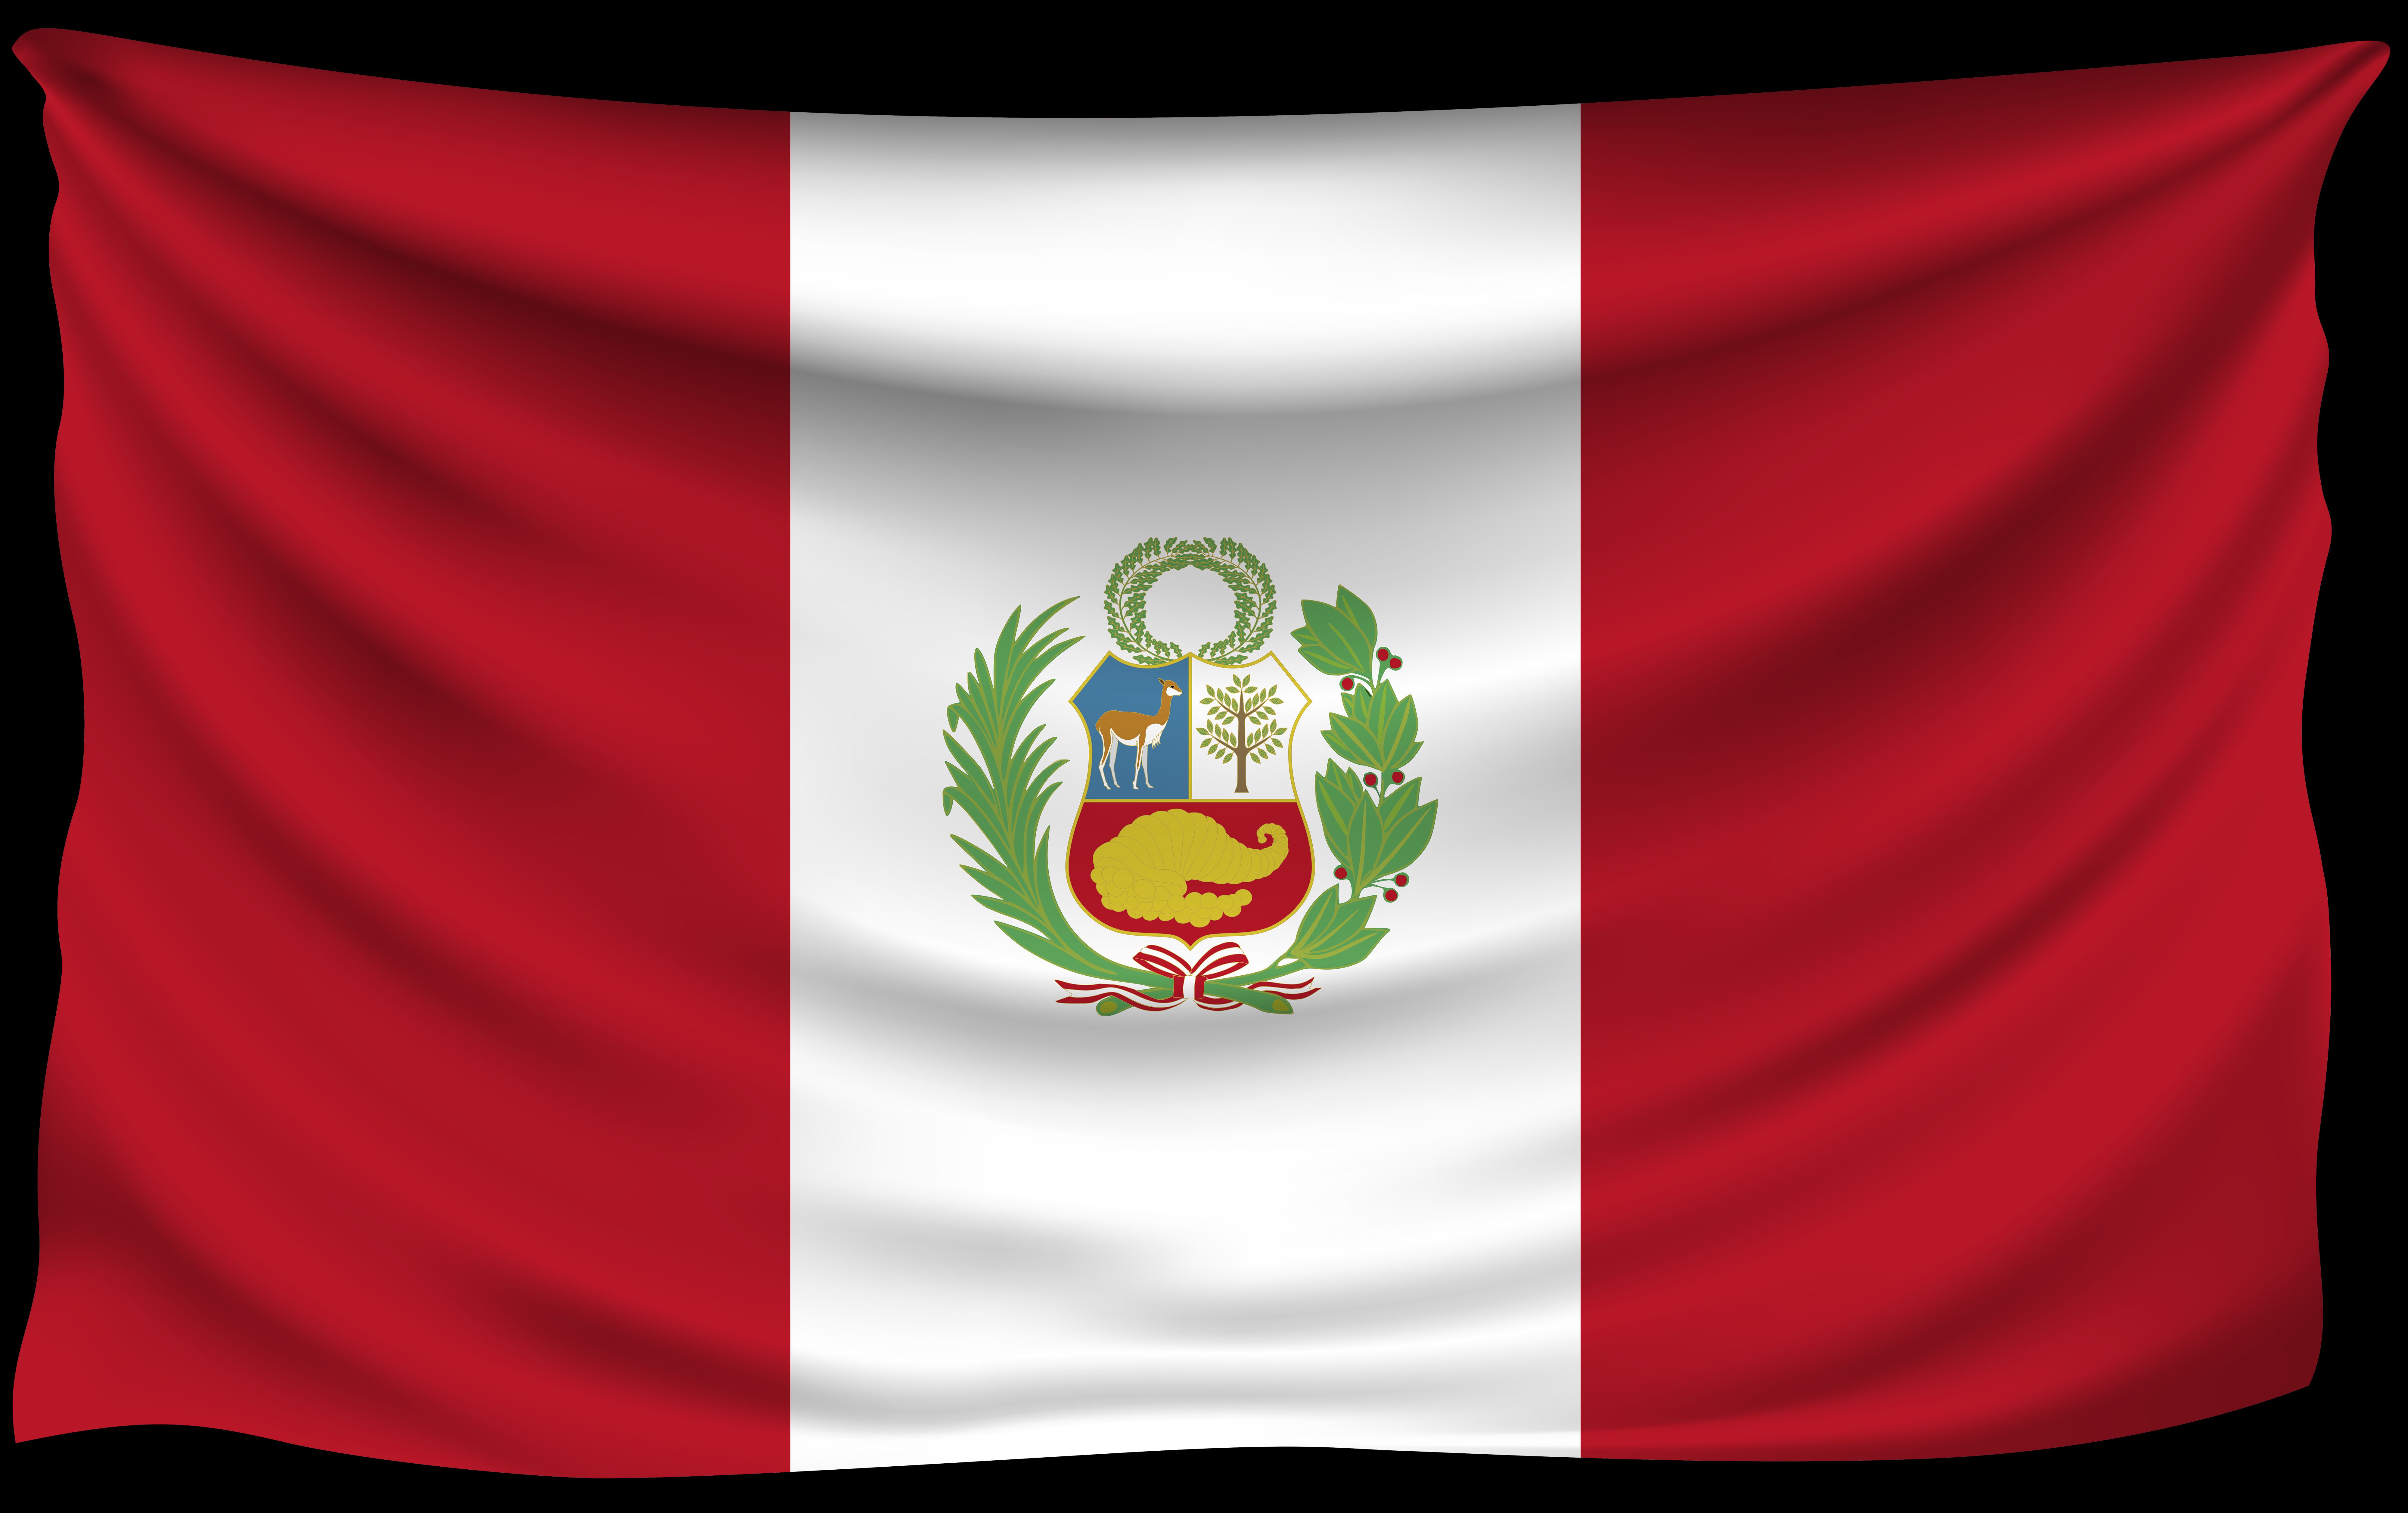 Descargar fondos de escritorio de Bandera Peruana HD